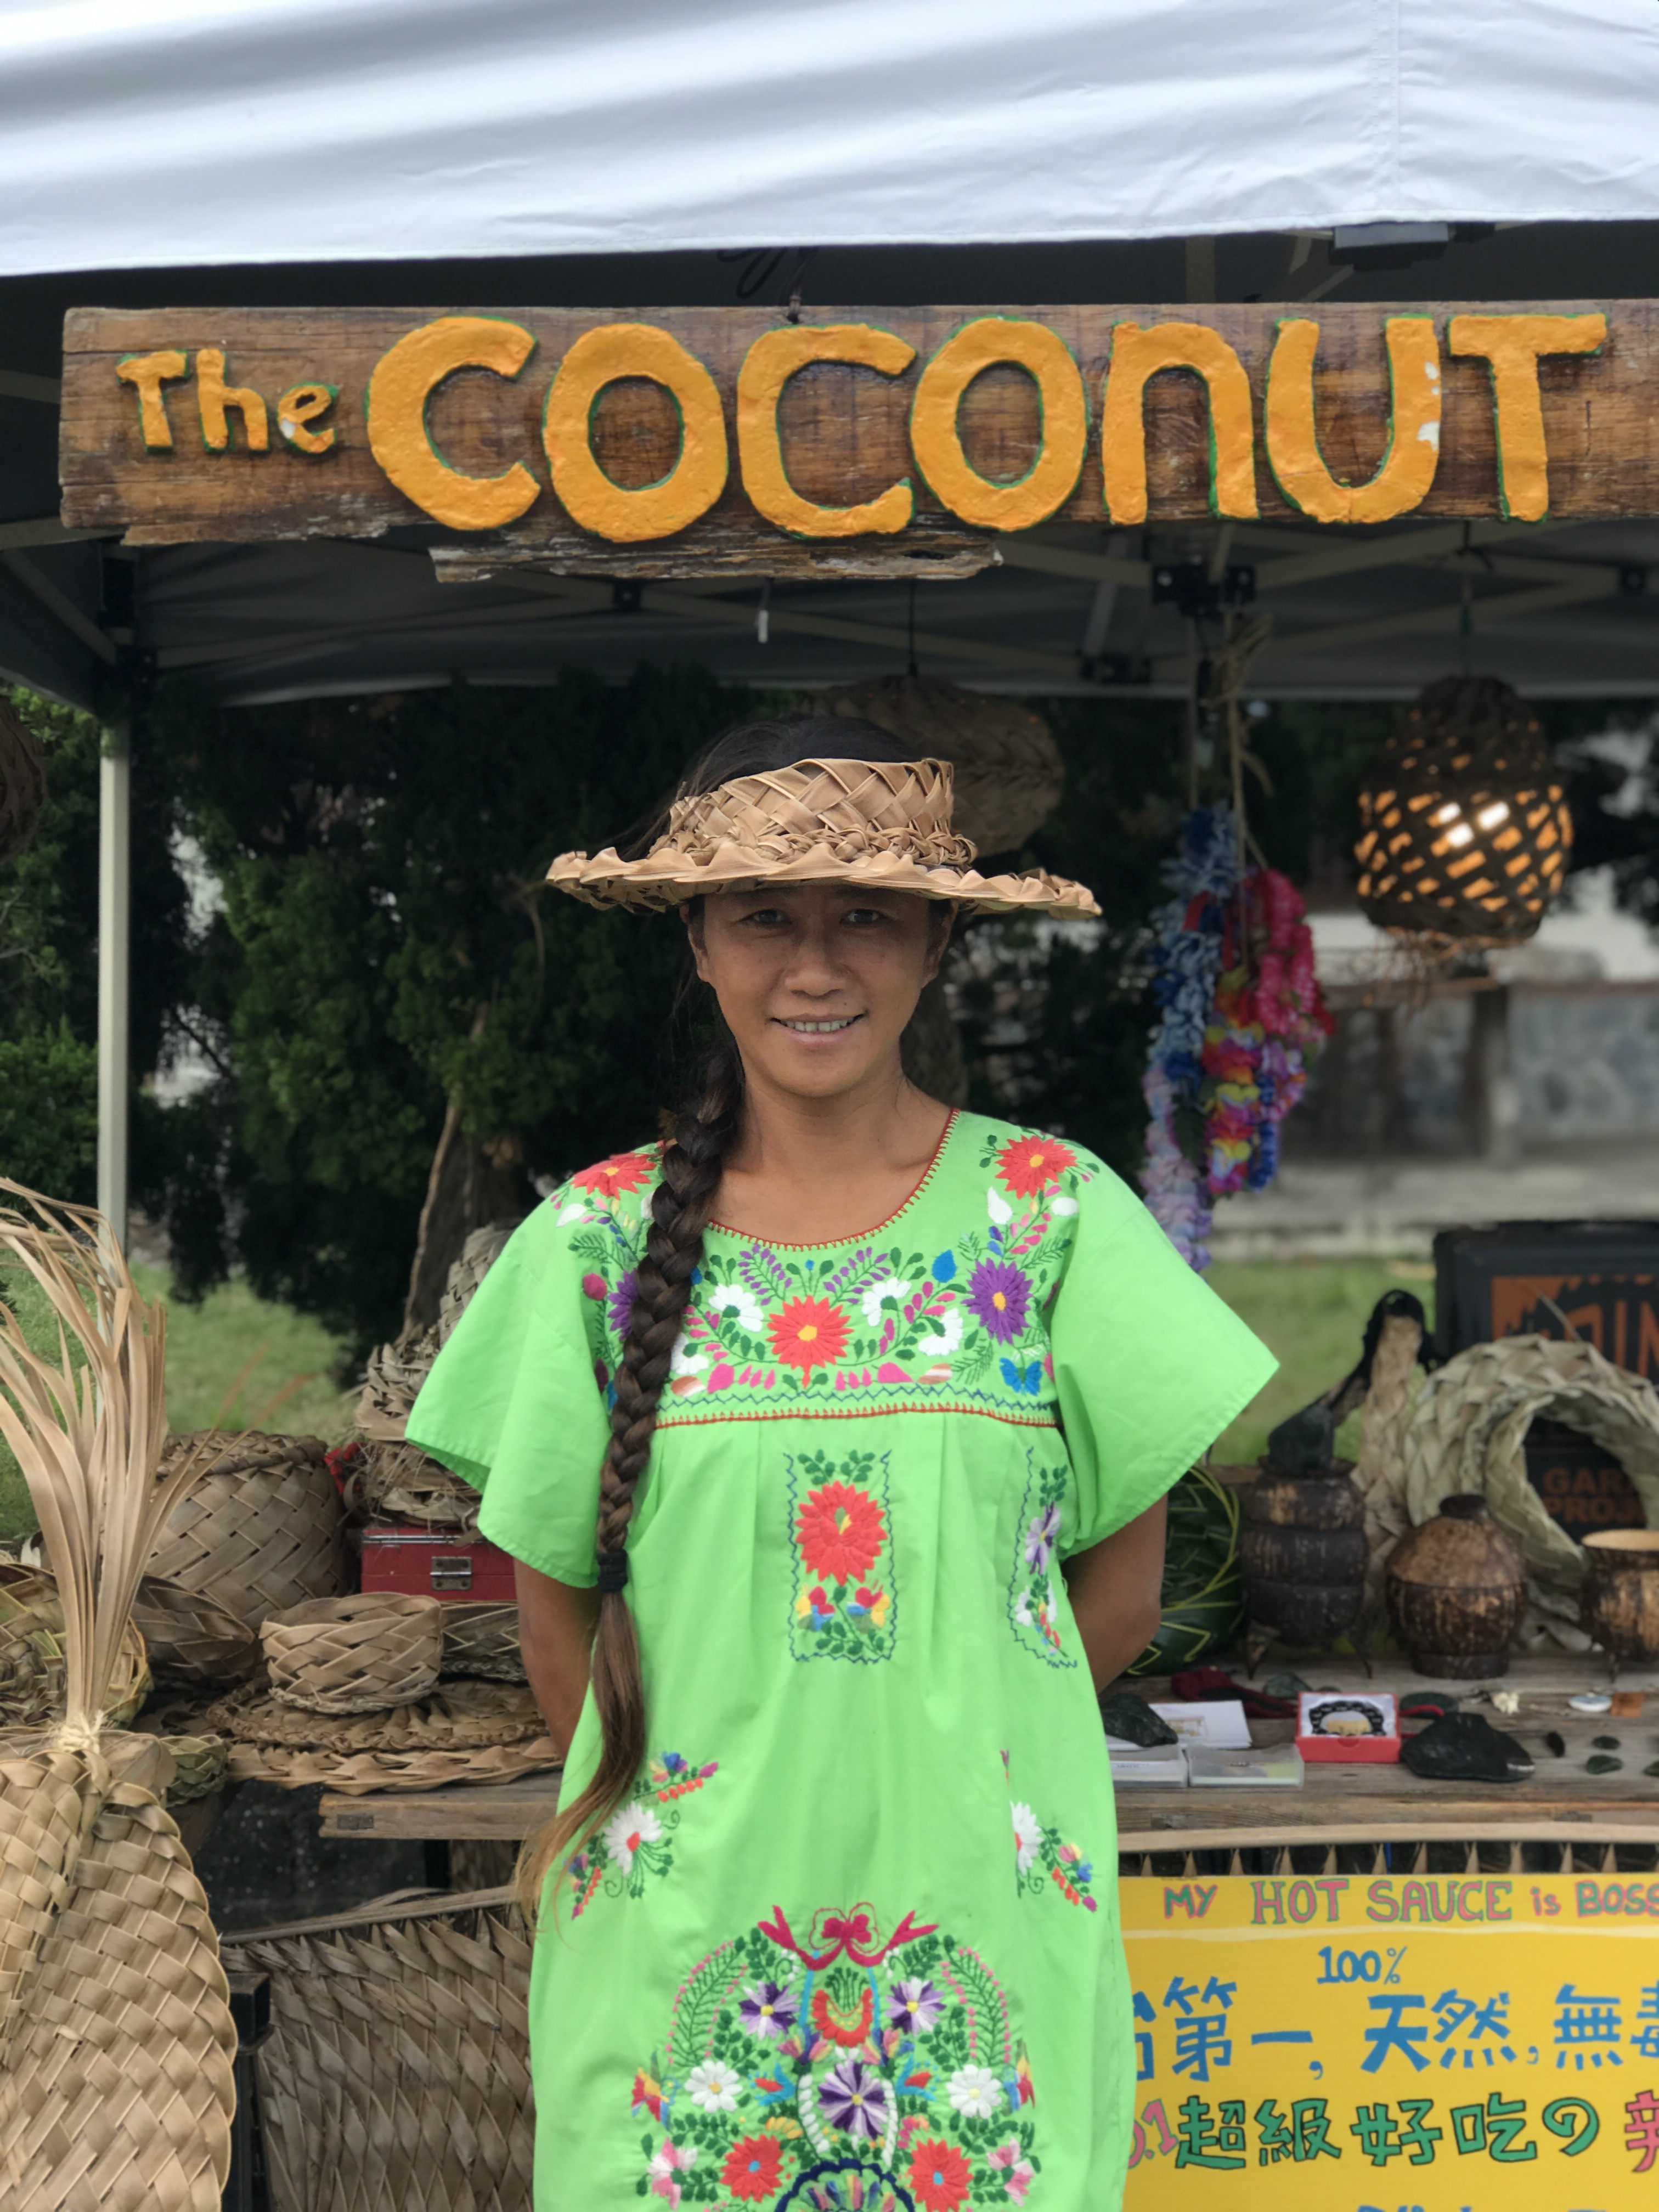 【The coconut woman 椰女郎】